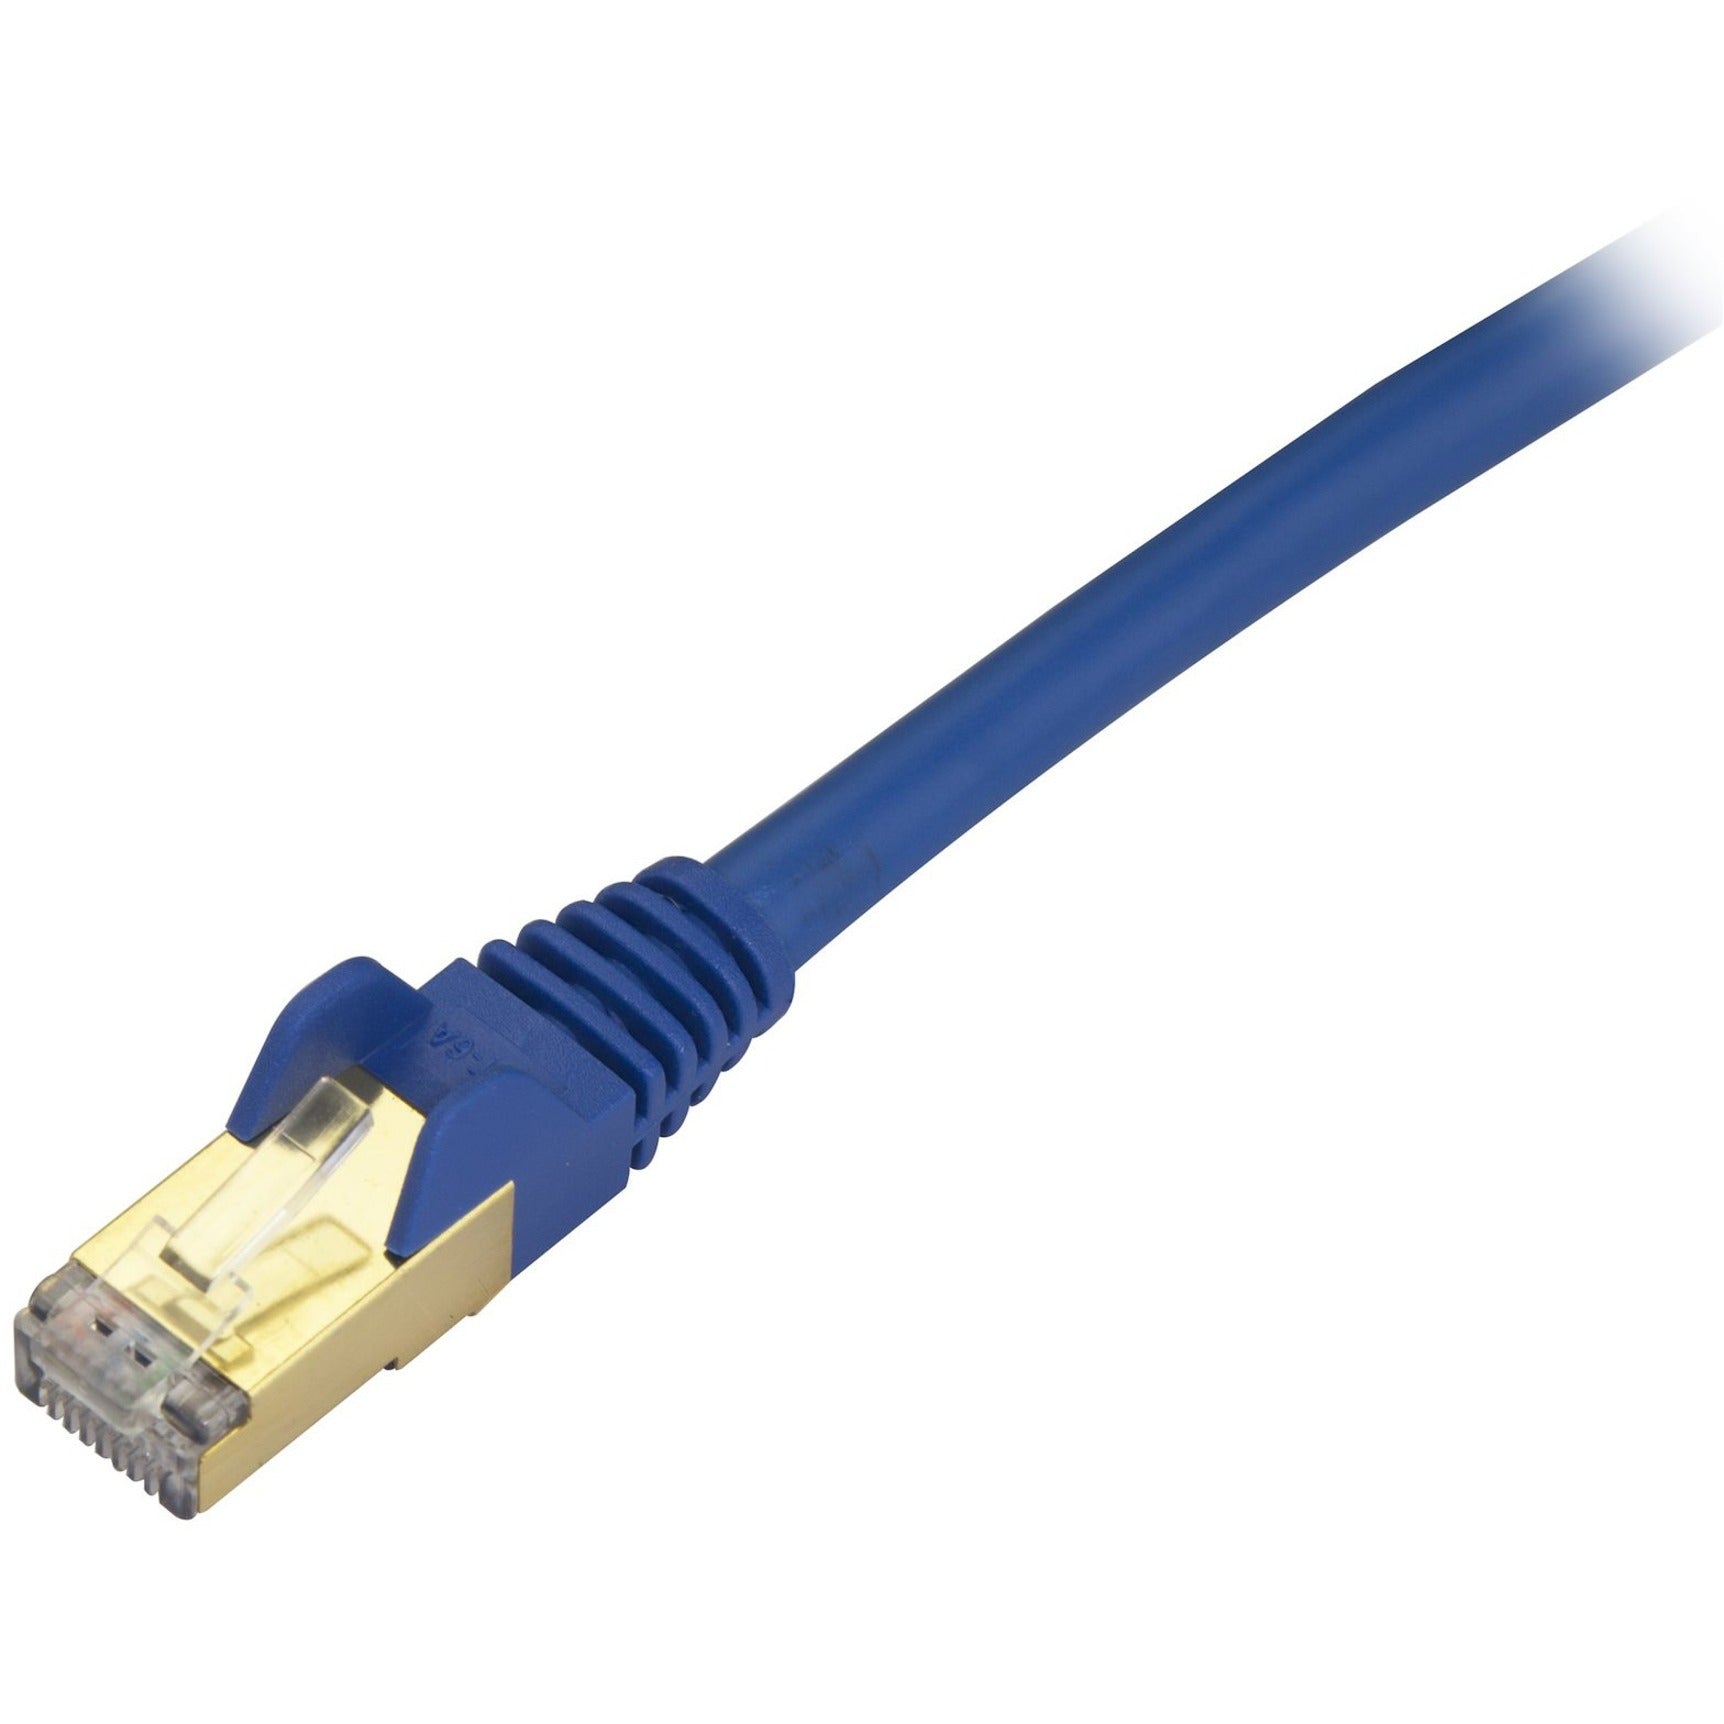 StarTech.com C6ASPAT20BL Cat6a Ethernet Patch Cable - Shielded (STP) - 20 ft., Blue, Long Ethernet Cord